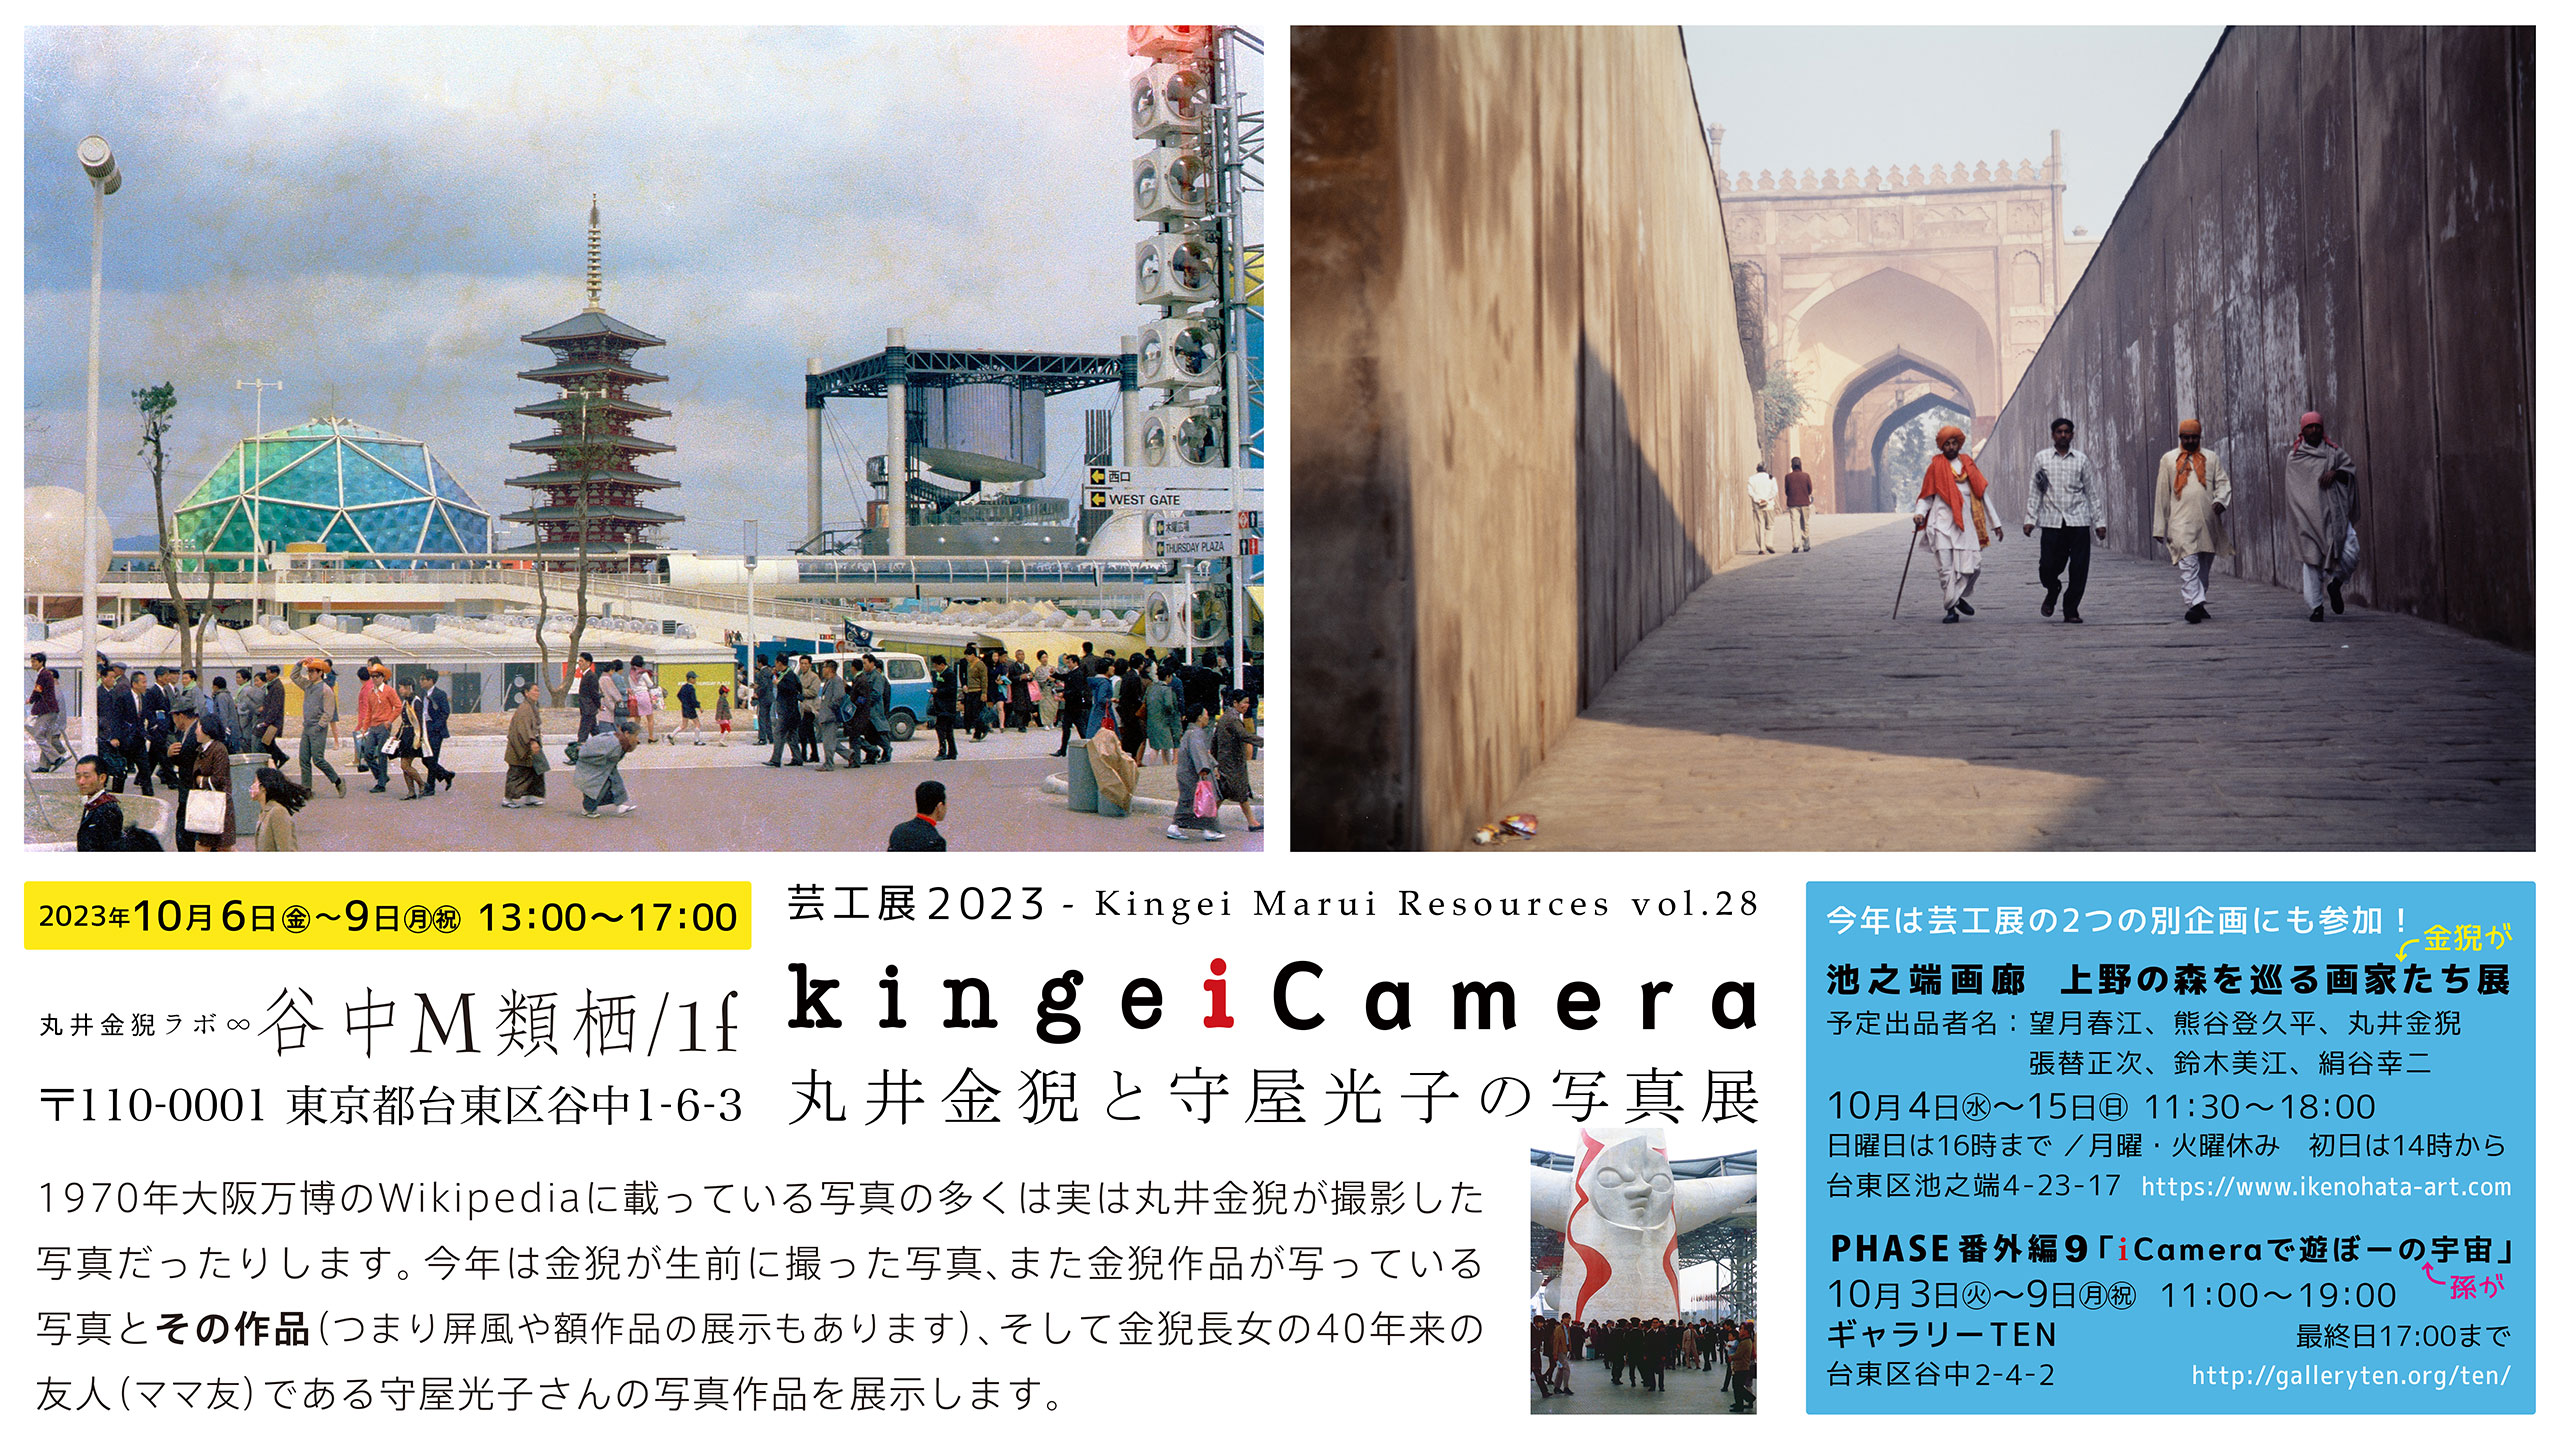 芸工展2023「kingeiCamera - 丸井金猊と守屋光子の写真展」